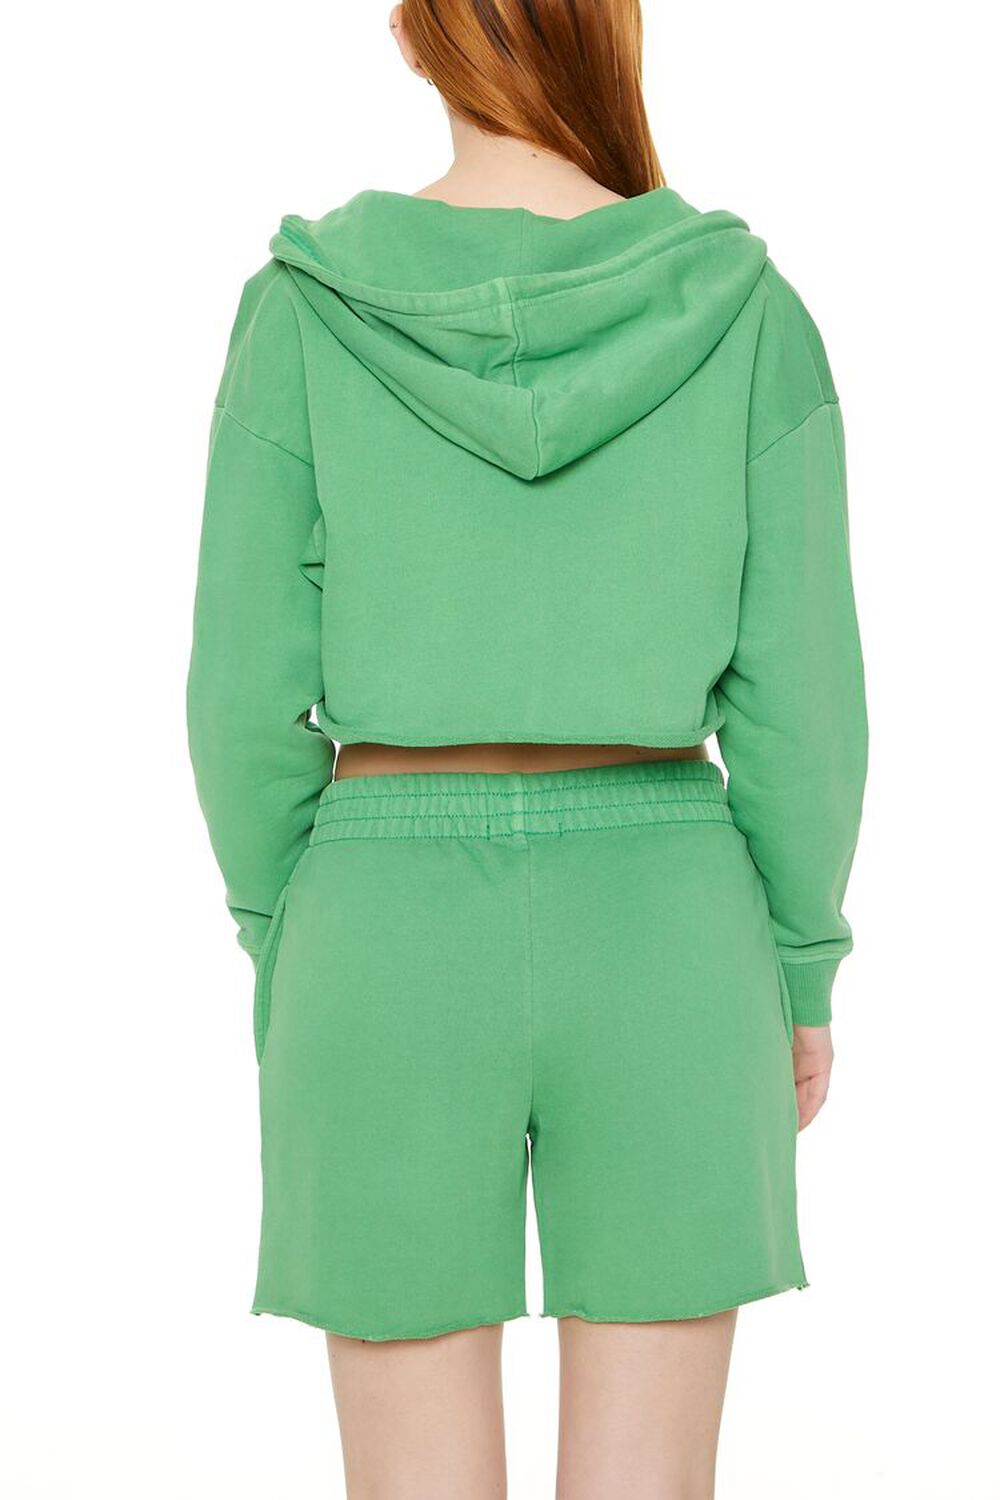 GREEN Cropped Zip-Up Hoodie, image 3